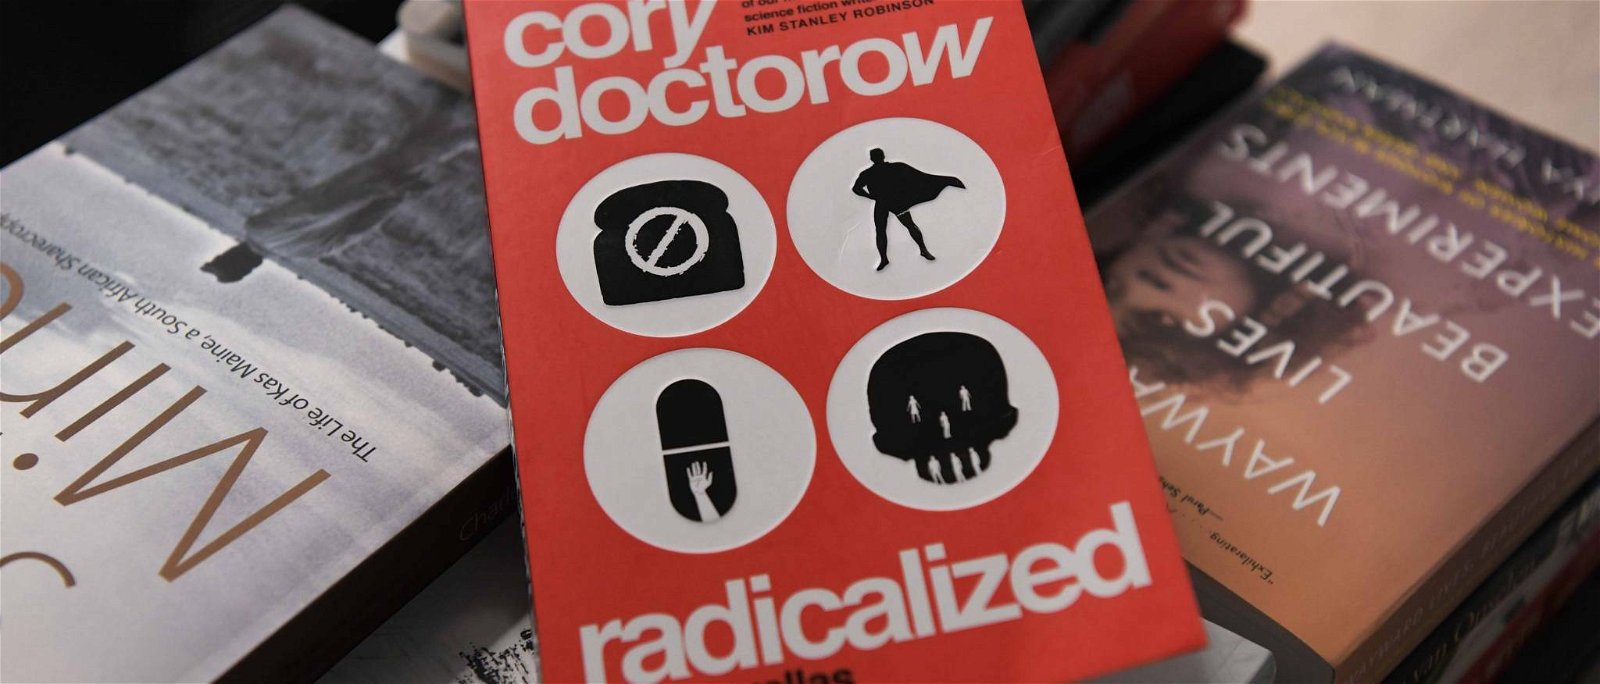 Immagine di Radicalized: recensione del domani di Cory Doctorow